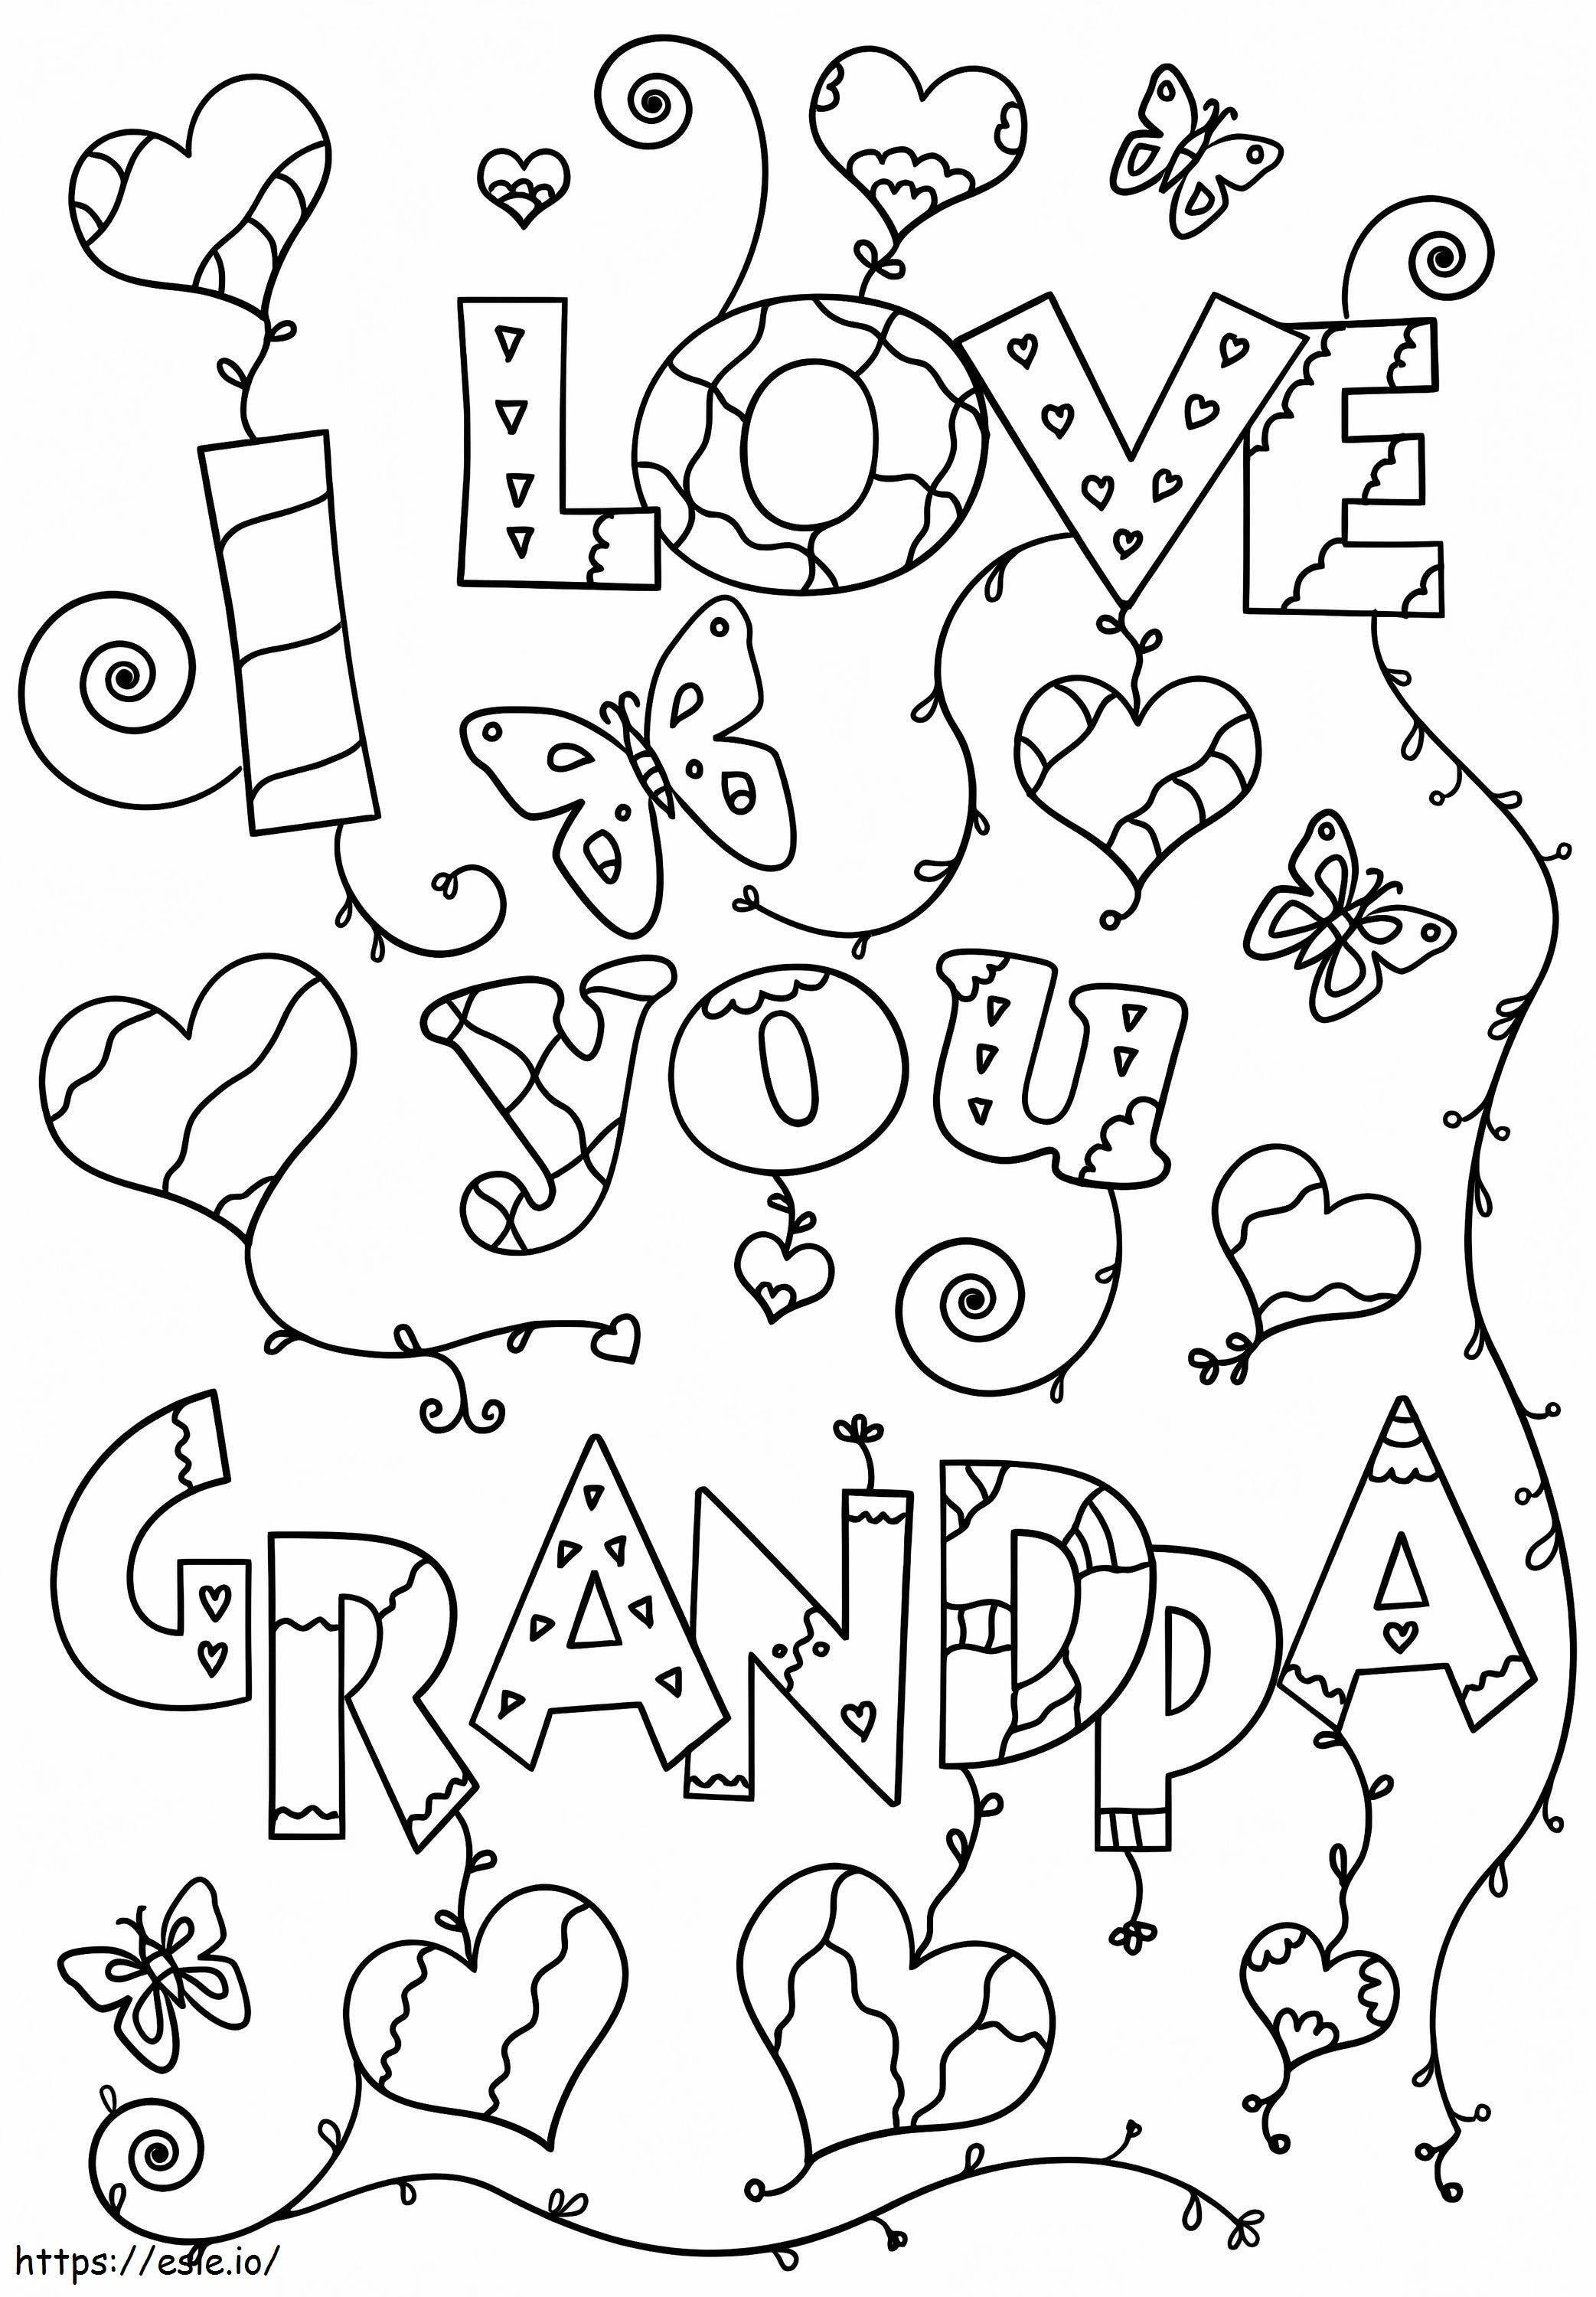 I Love You Grandpa coloring page